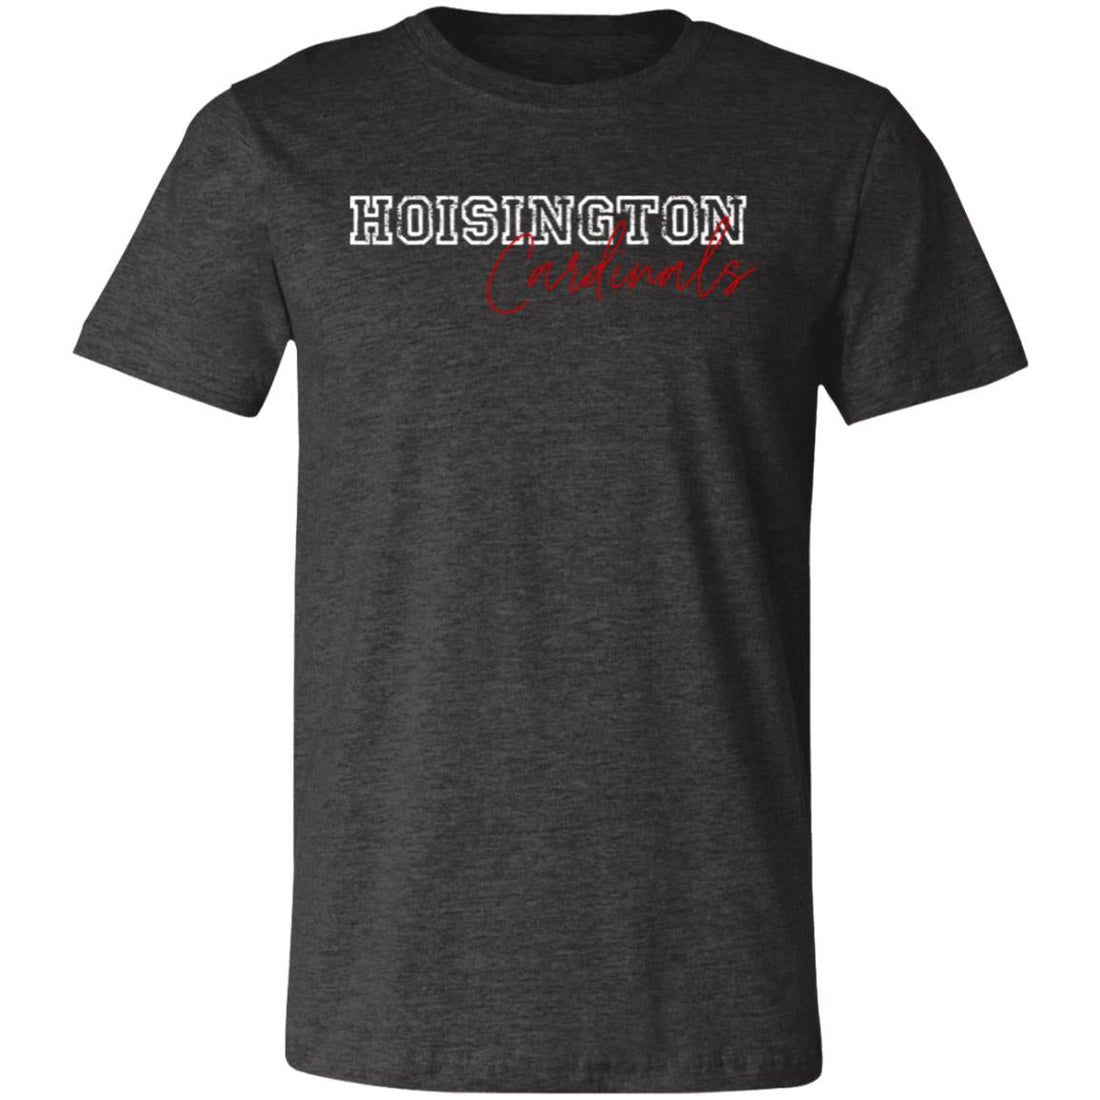 Hoisington Cardinals T-Shirt - T-Shirts - Positively Sassy - Hoisington Cardinals T-Shirt